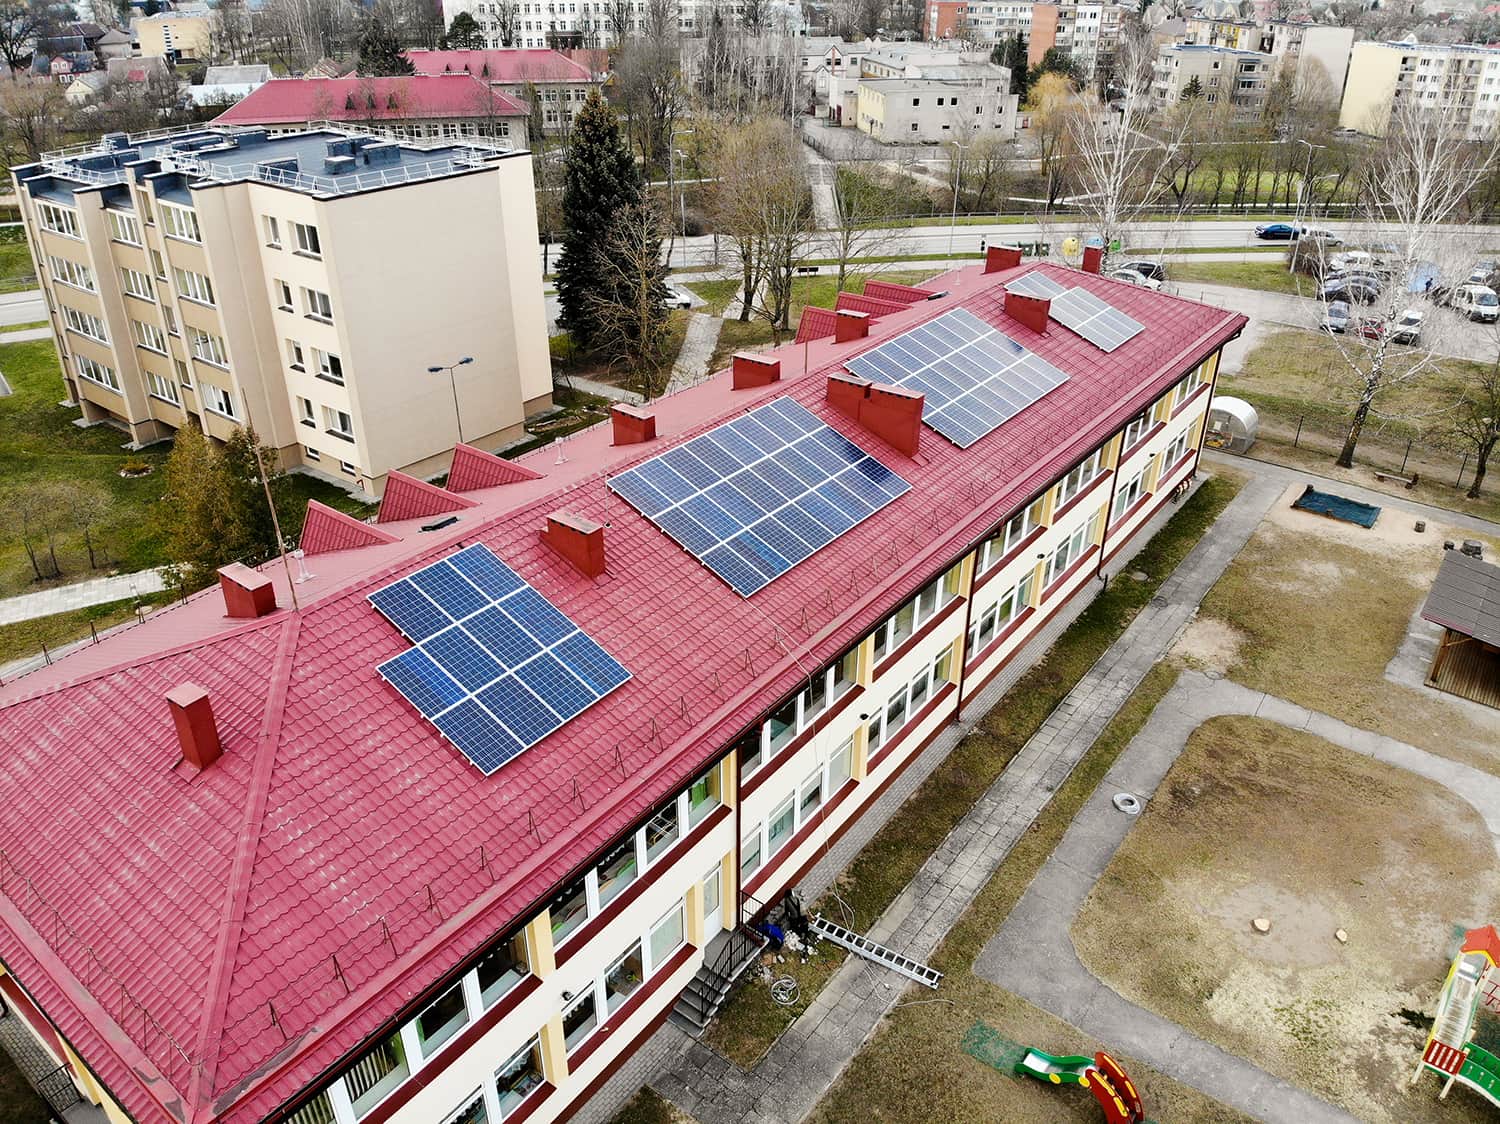 Bisol saulės moduliai naudojami ant darželio stogo